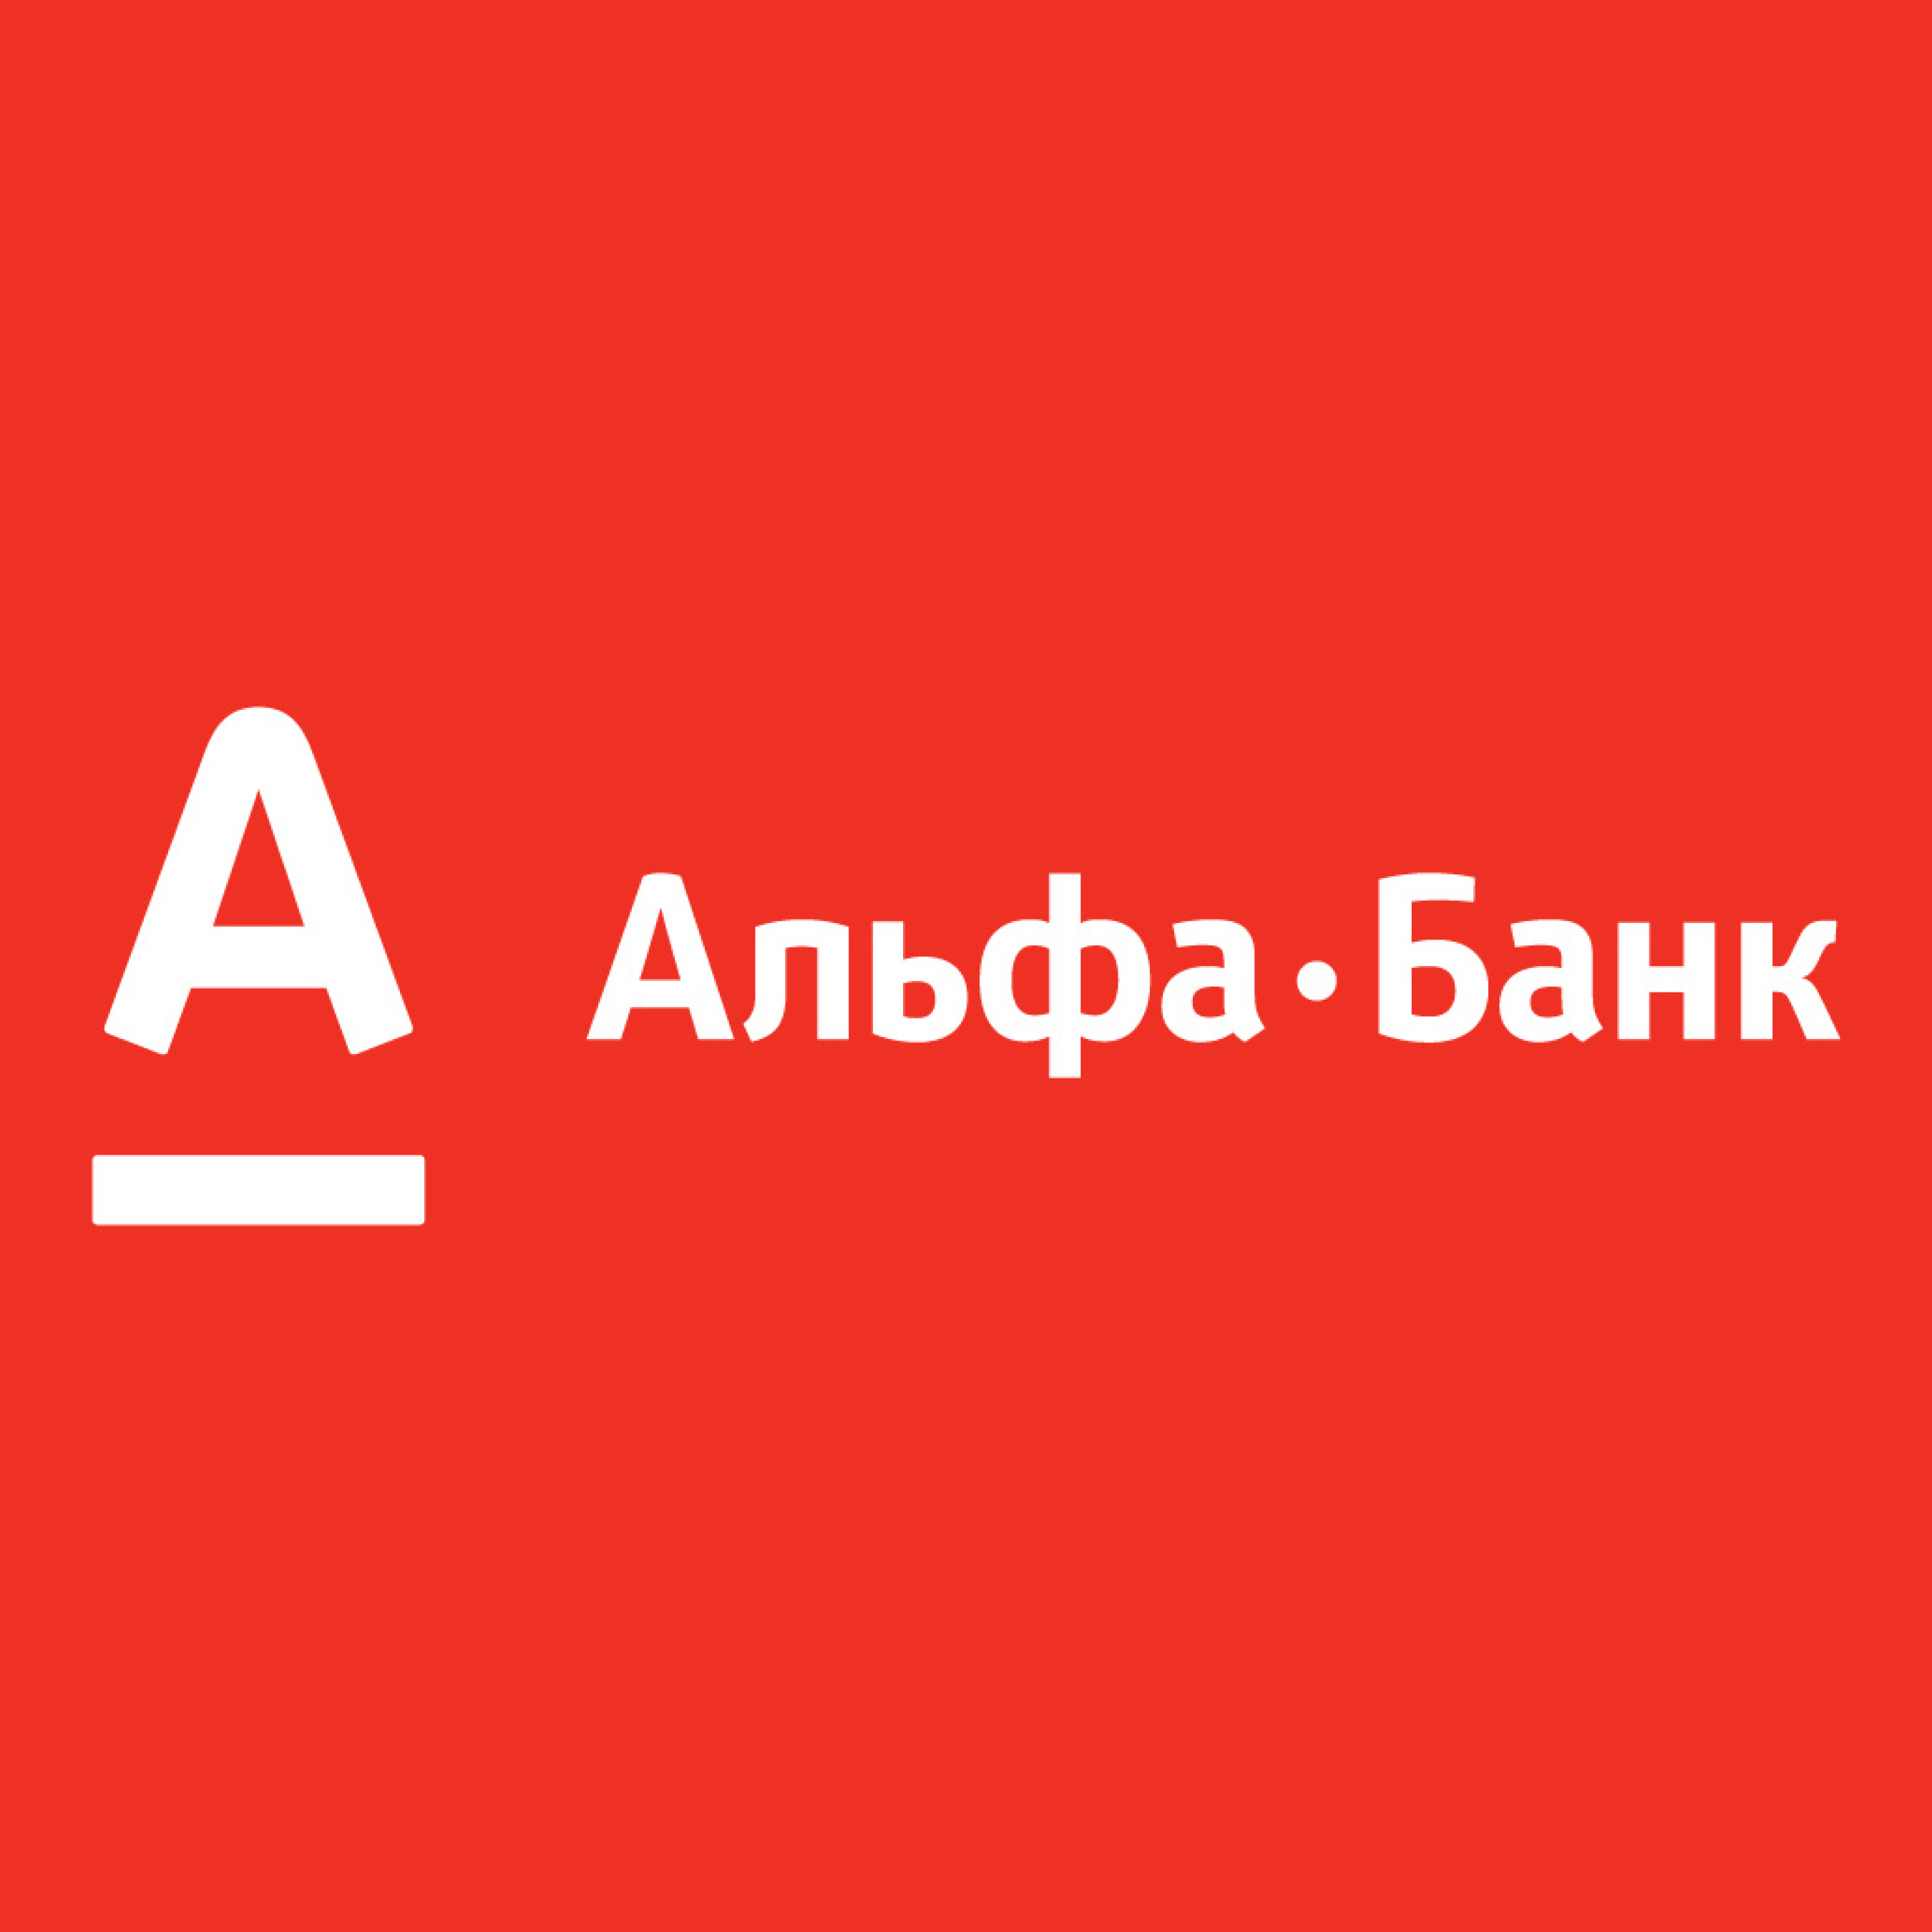 Альфа банк. Логотип банка Альфа банк. Альфа банк Казахстан логотип. Альфа банк логотип новый. Альфа банк маркетплейс